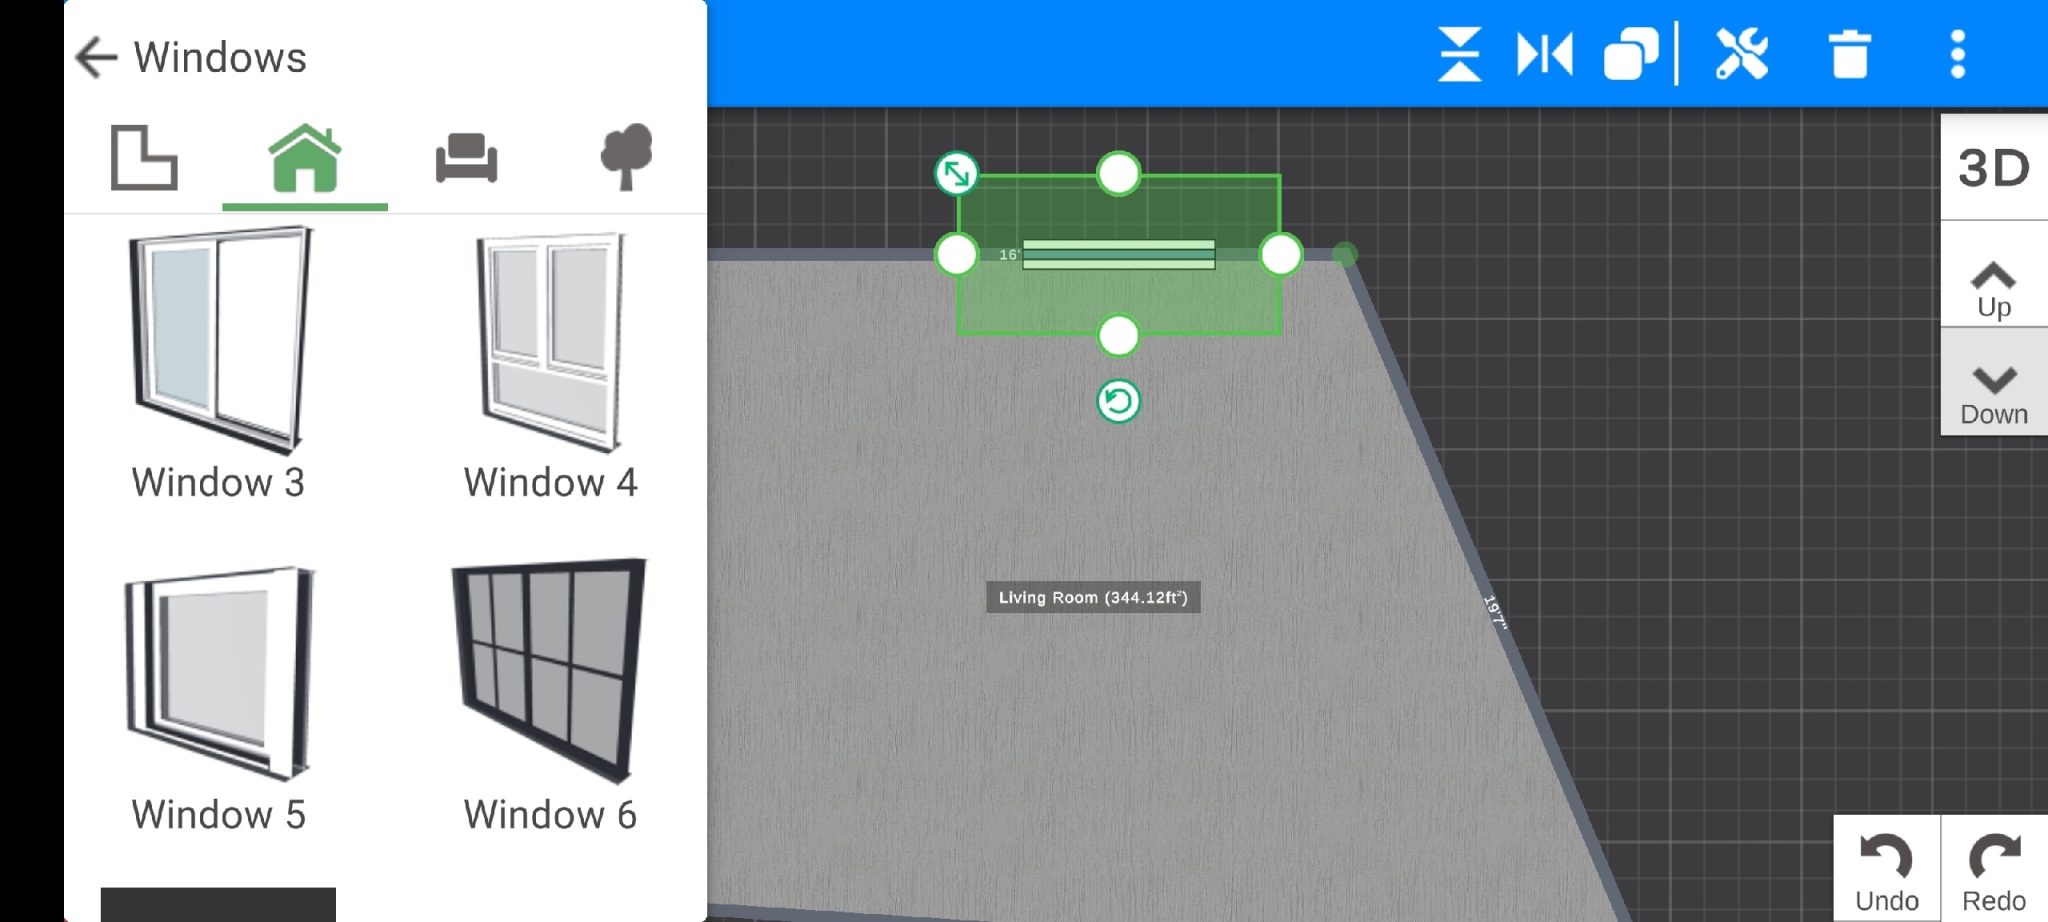 Home Designer 3D: Planimetria della stanza1